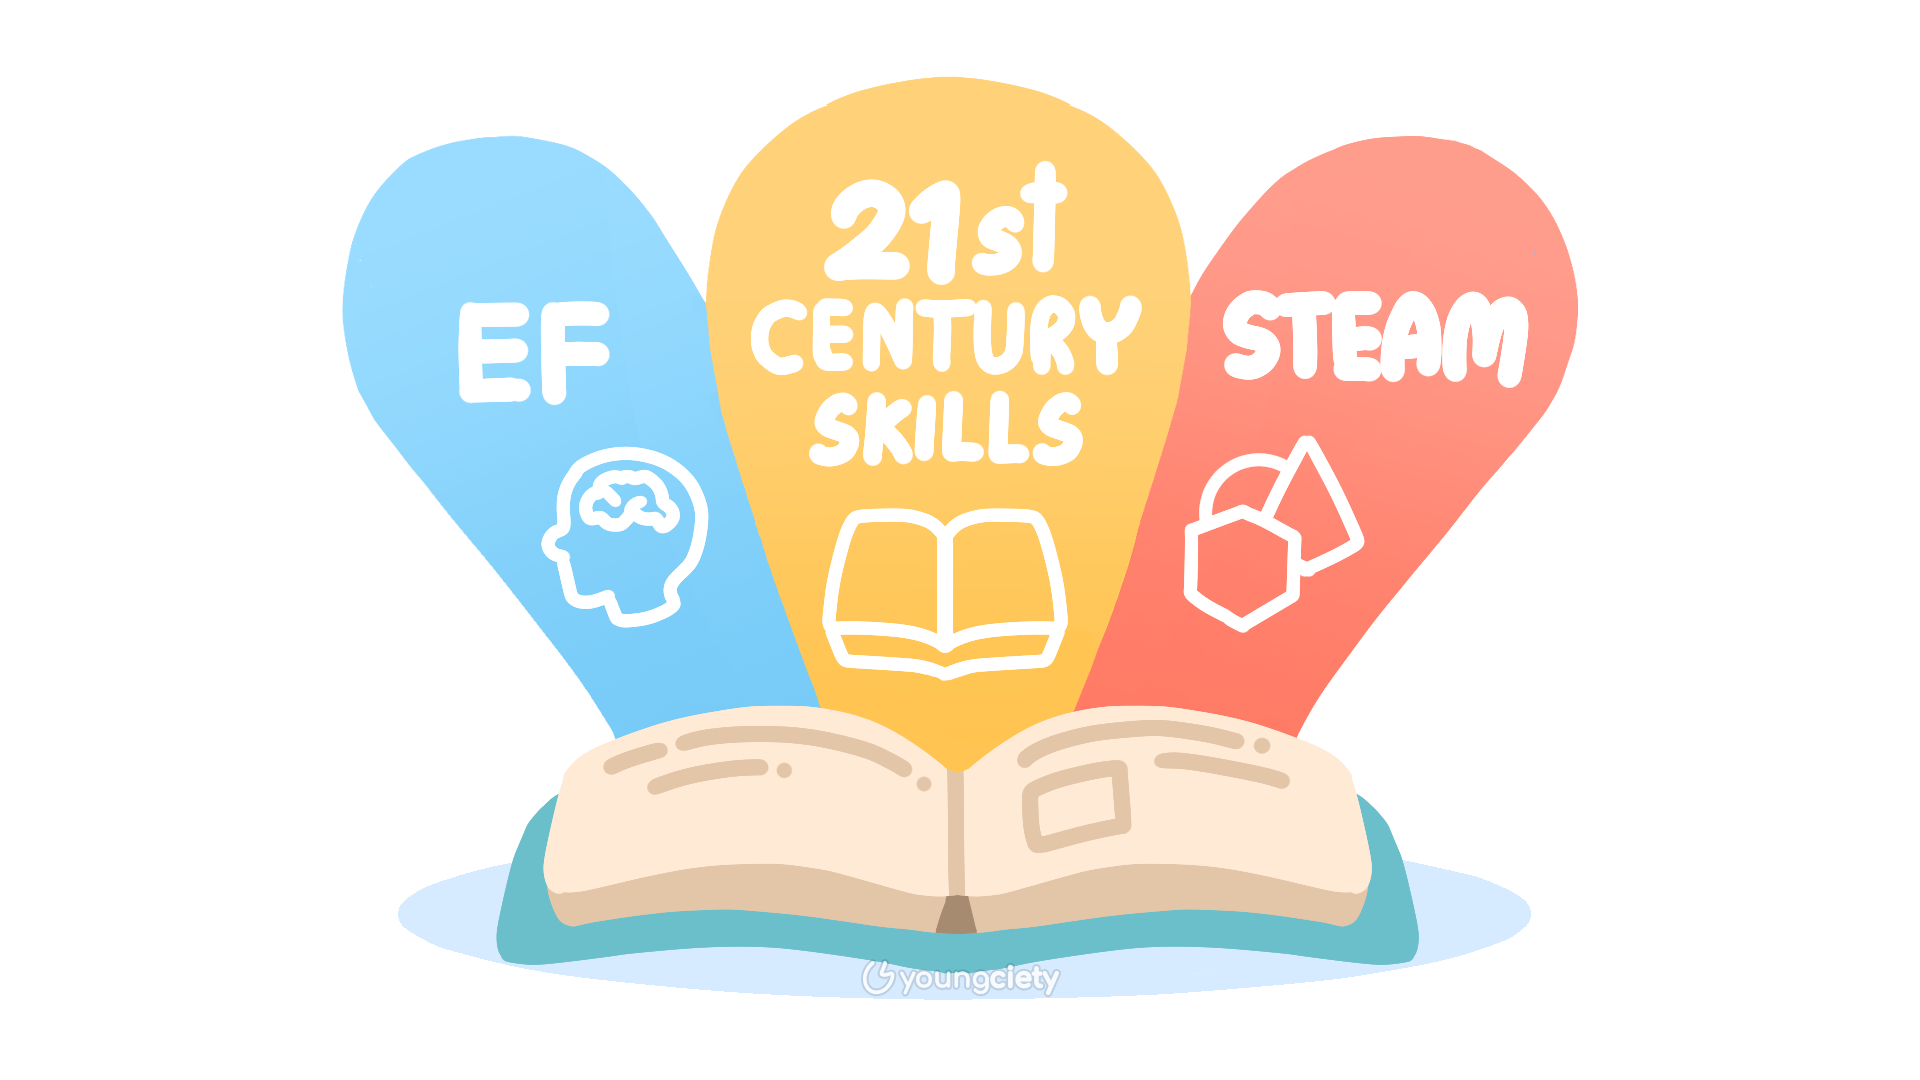 การศึกษาในศตวรรษที่ 21 STEAM และ EF (Executive Functions) มีความเชื่อมโยงกัน ทั้งยังแทรกอยู่ในหลักสูตรการเรียนการศึกษามานานแล้ว